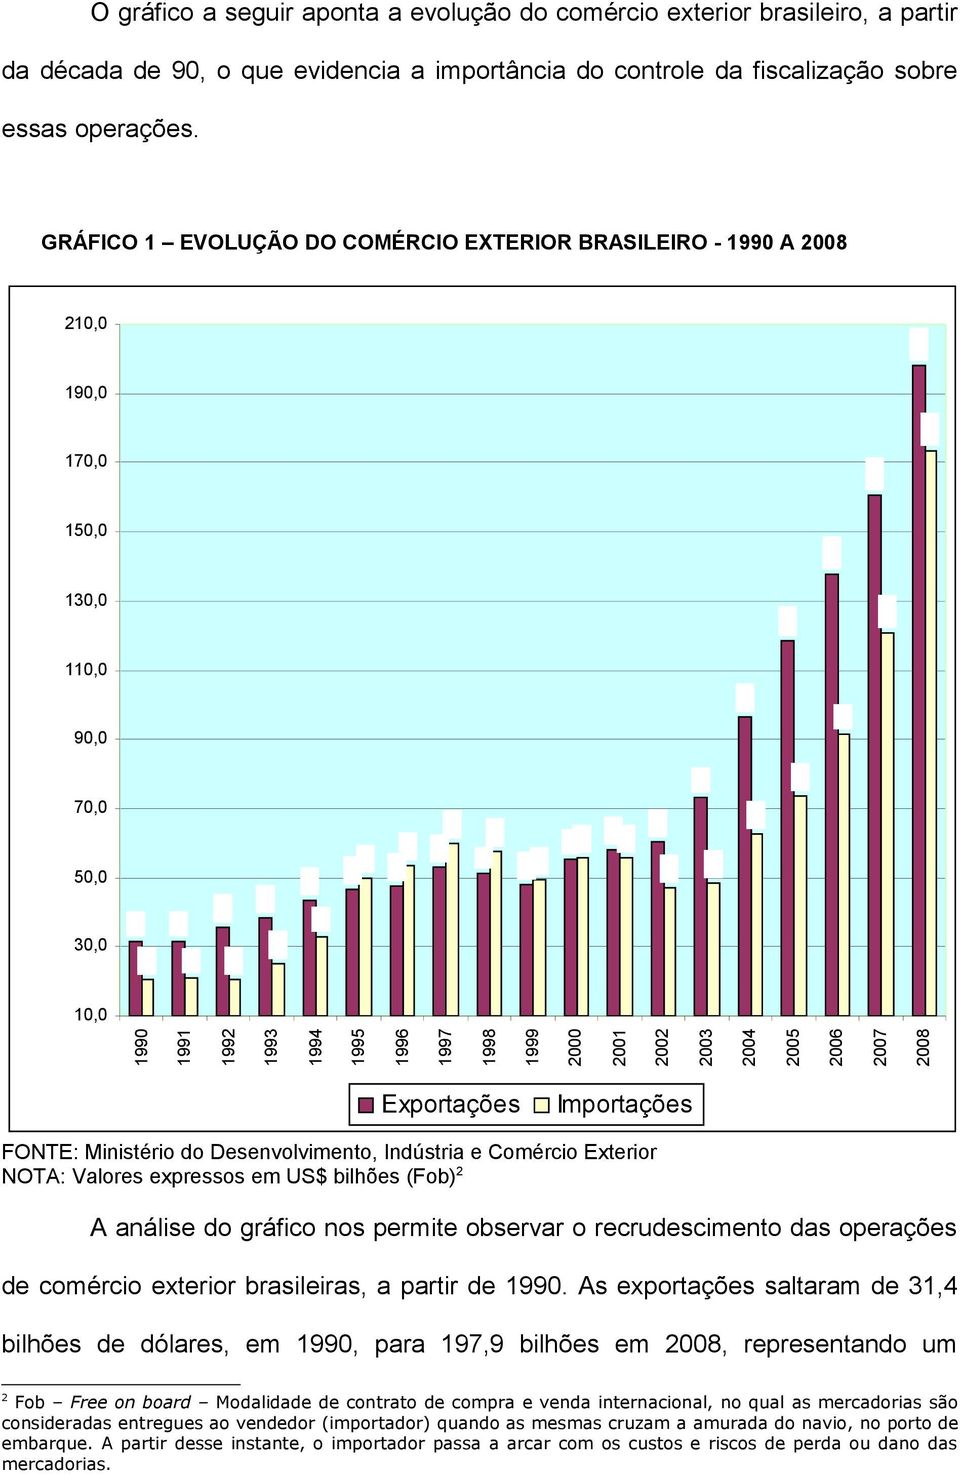 2004 2005 2006 2007 2008 Exportações Importações FONTE: Ministério do Desenvolvimento, Indústria e Comércio Exterior NOTA: Valores expressos em US$ bilhões (Fob) 2 A análise do gráfico nos permite